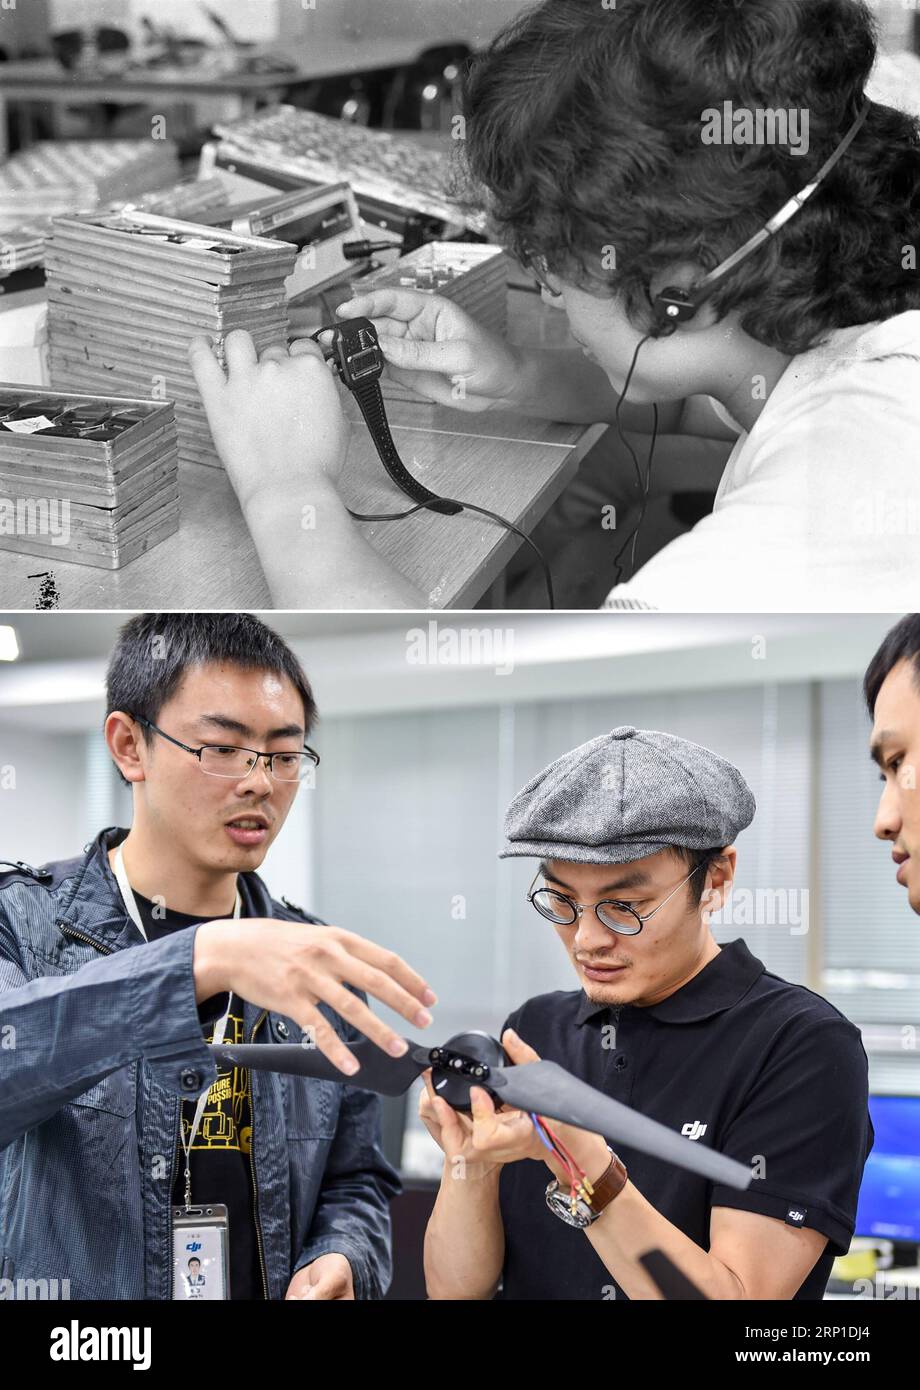 (180628) -- SHENZHEN, 28. Juni 2018 -- der obere Teil (Datei) dieses von Li Changyong aufgenommenen Kombi-Fotos zeigt einen Arbeiter, der eine elektronische Uhr in einer Fabrik in Shenzhen in der südchinesischen Provinz Guangdong herstellt. Der untere Teil der Kombo-Aufnahme, die am 22. Mai 2015 von aufgenommen wurde, zeigt den Gründer von da-Jiang Innovations (DJI) Wang Tao (C), der mit Forschern in Shenzhen diskutiert. In diesem Jahr jährt sich Chinas Reform- und Öffnungspolitik zum 40. Mal. In den letzten vier Jahrzehnten hat sich Shenzhen von einem kleinen Fischerdorf zu einer Metropole entwickelt. (MCG) CHINA-GUANGDONG-SHENZHEN-DEVELOPMENT-COMPARISON (CN Stockfoto